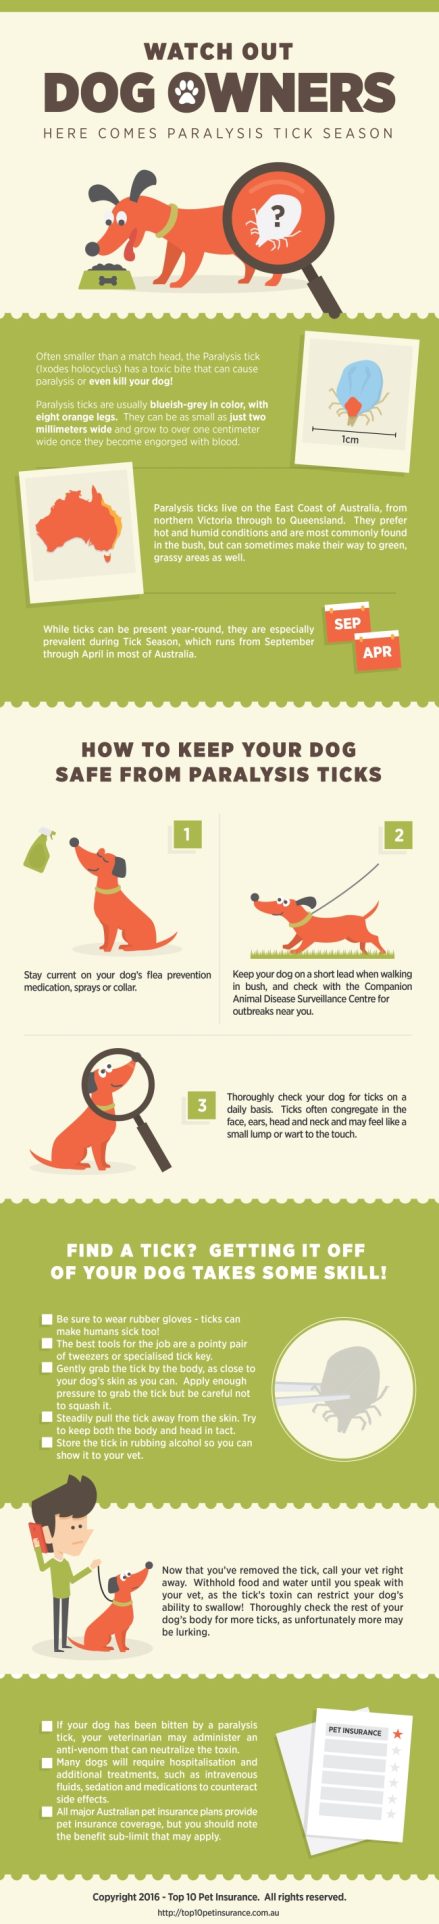 Keep Your Dog Safe from Paralysis Ticks